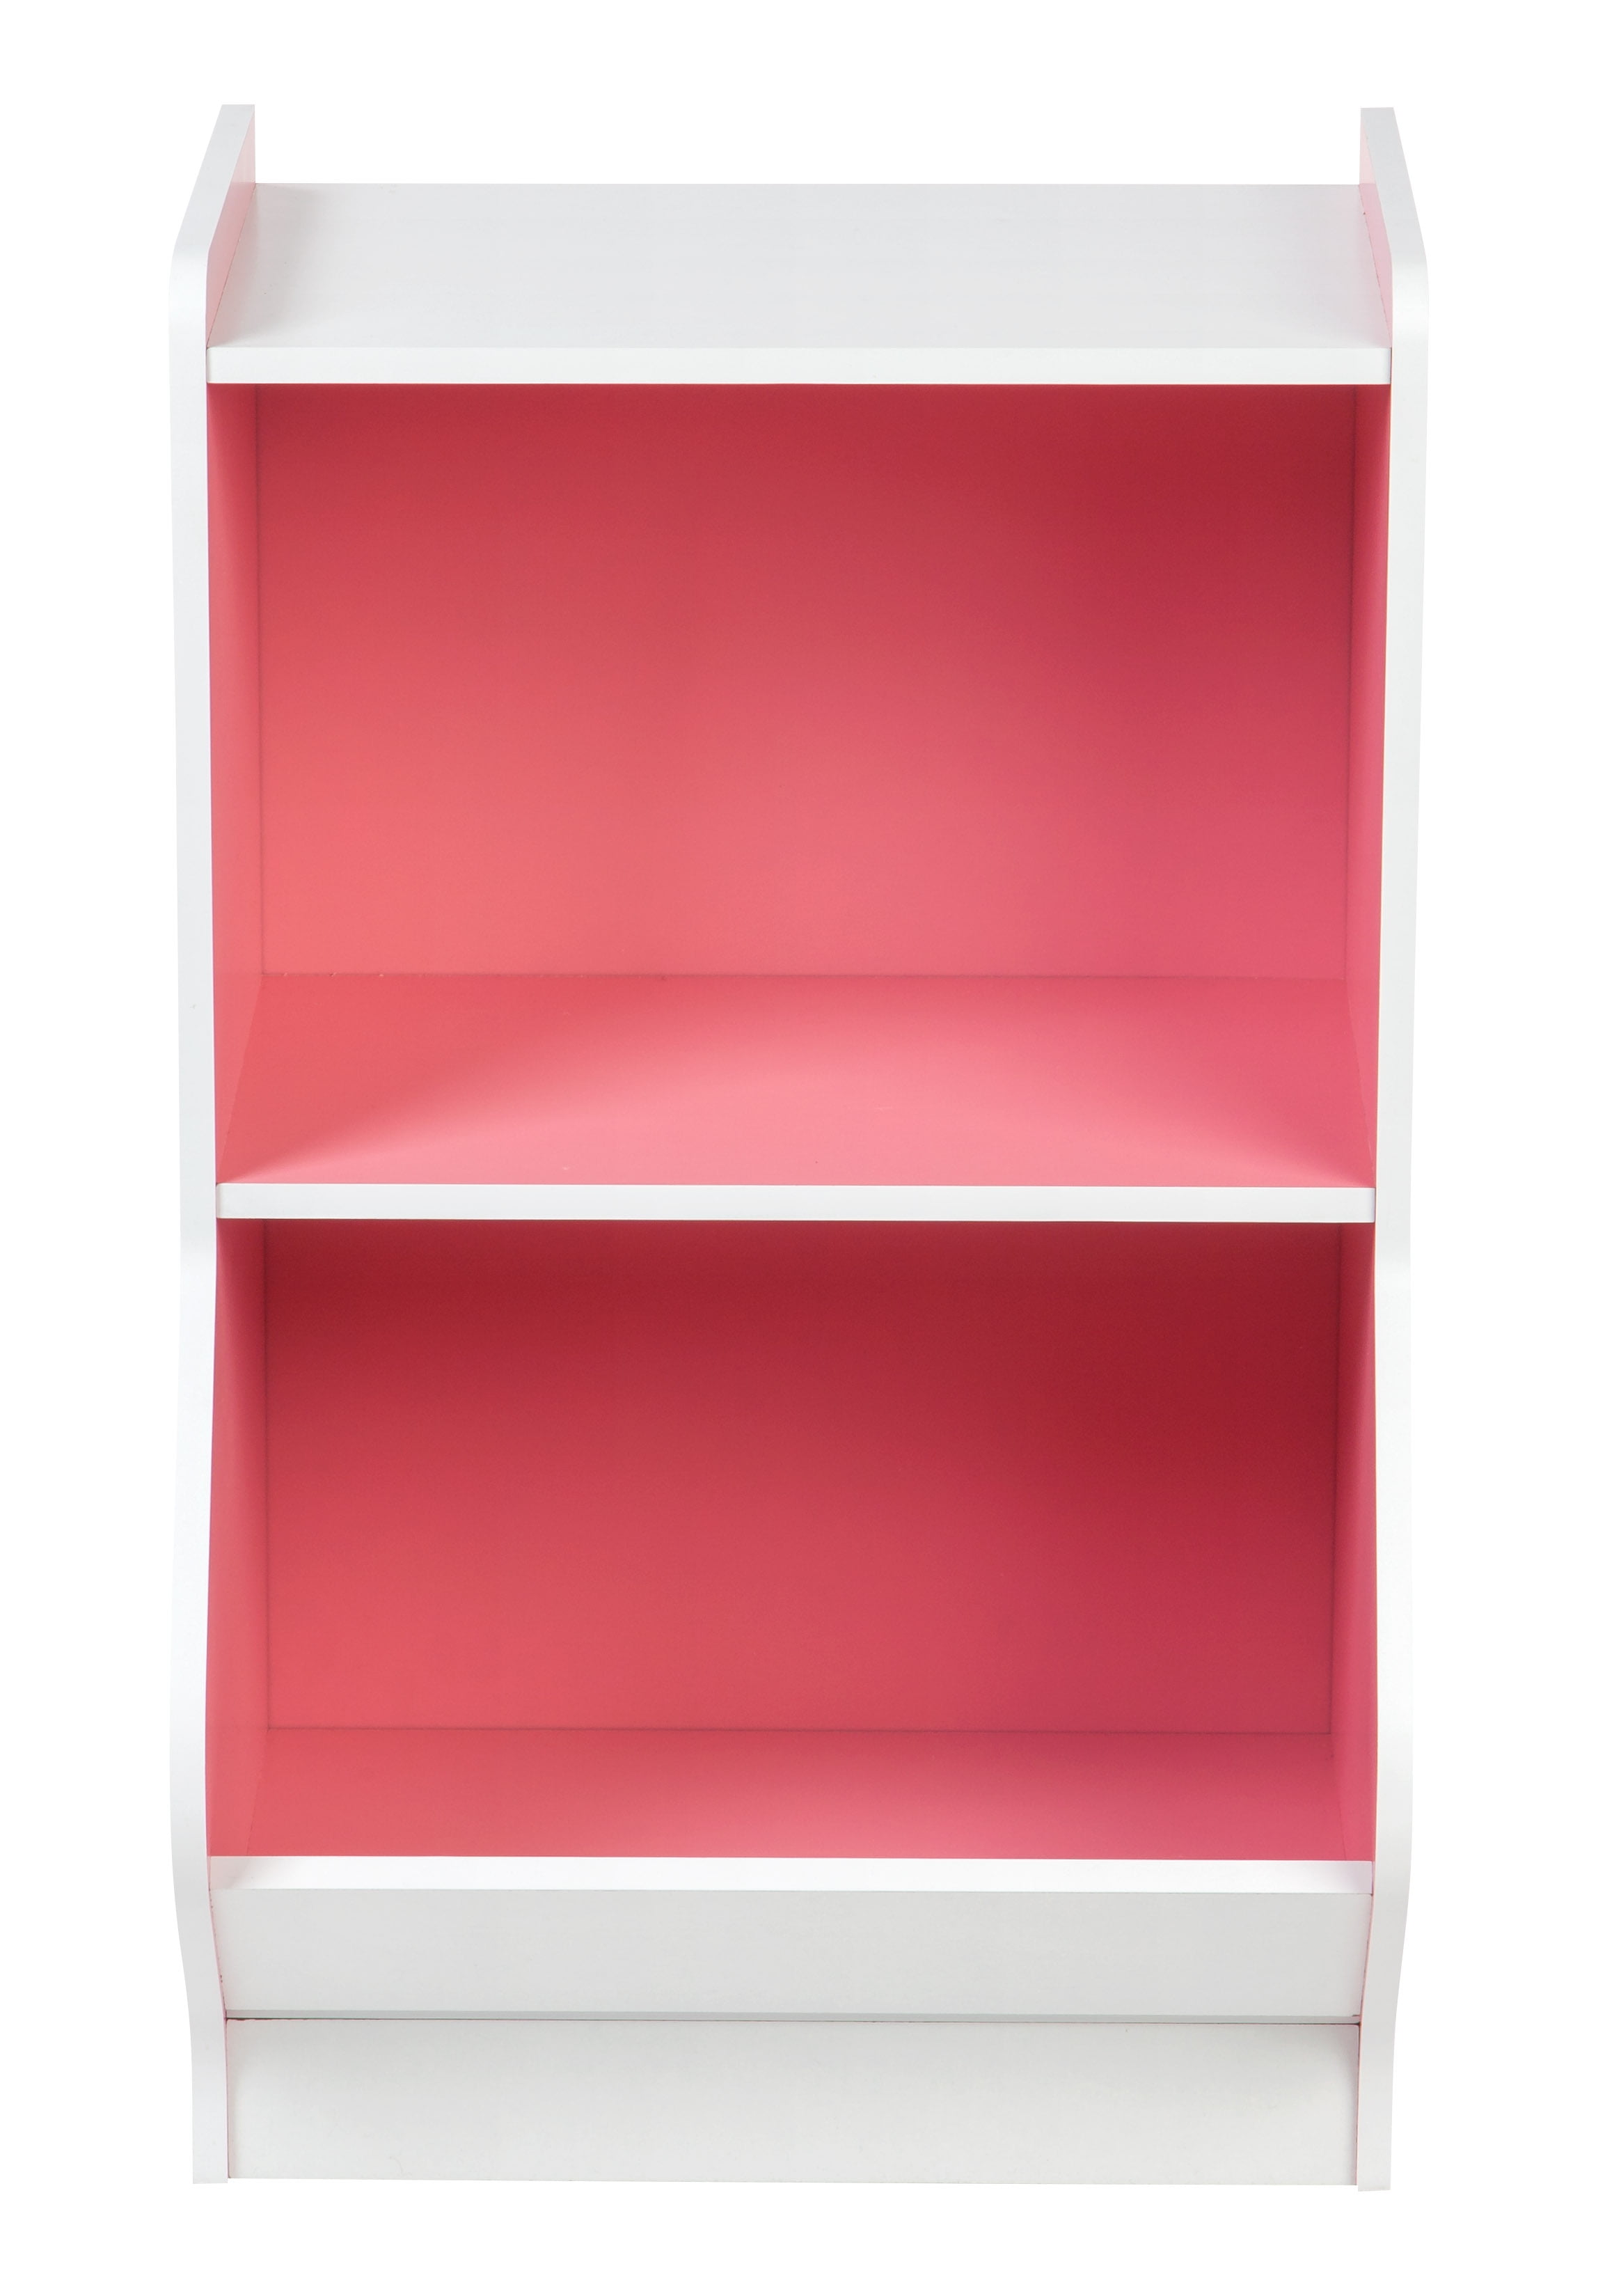 IRIS USA 2-Tier Storage Organizer Shelf with Footboard, White 